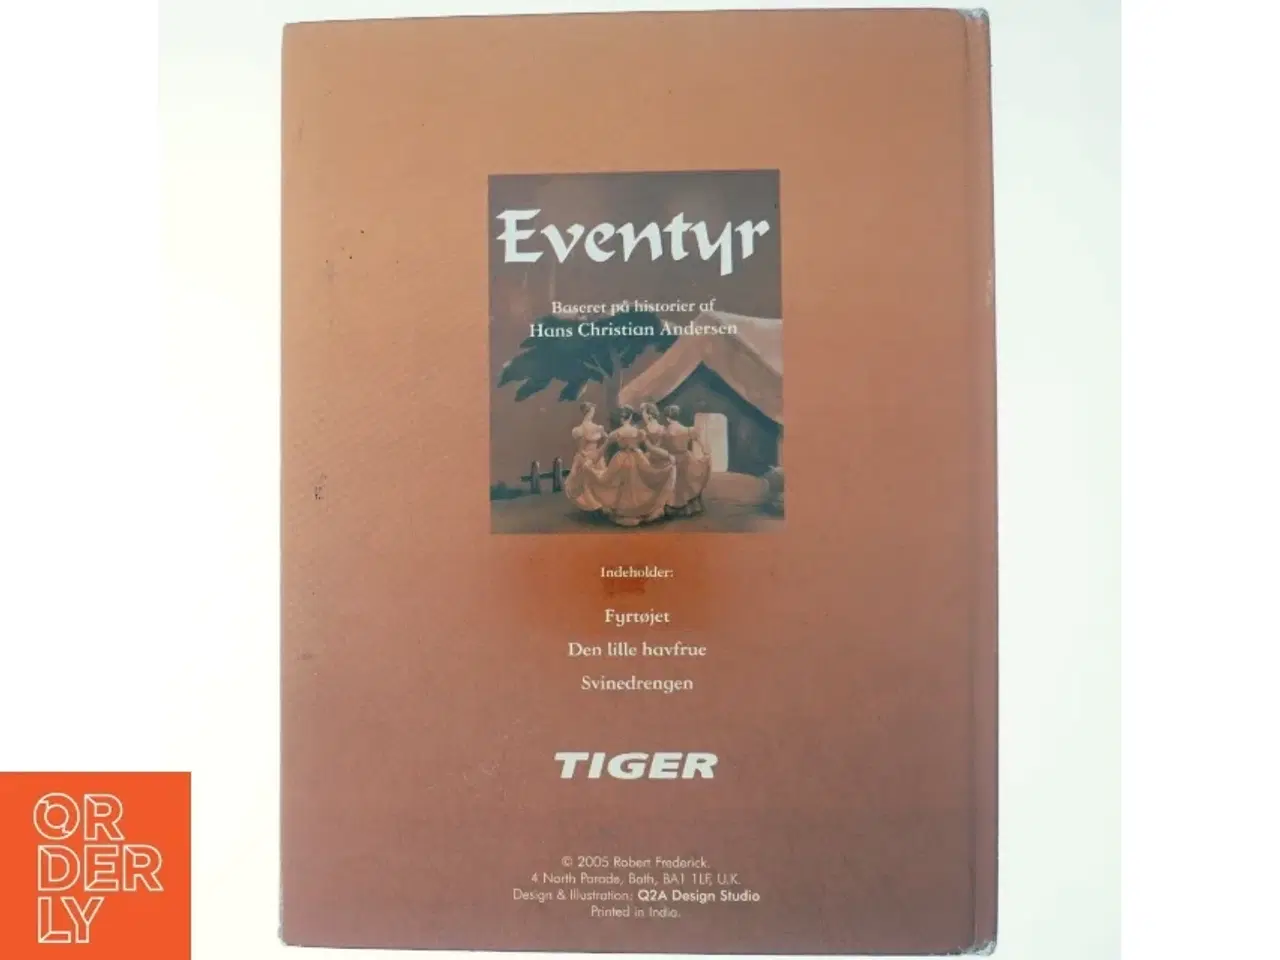 Billede 3 - Eventyr baseret på historier af H.C. Andersen (Bog) fra Tiger